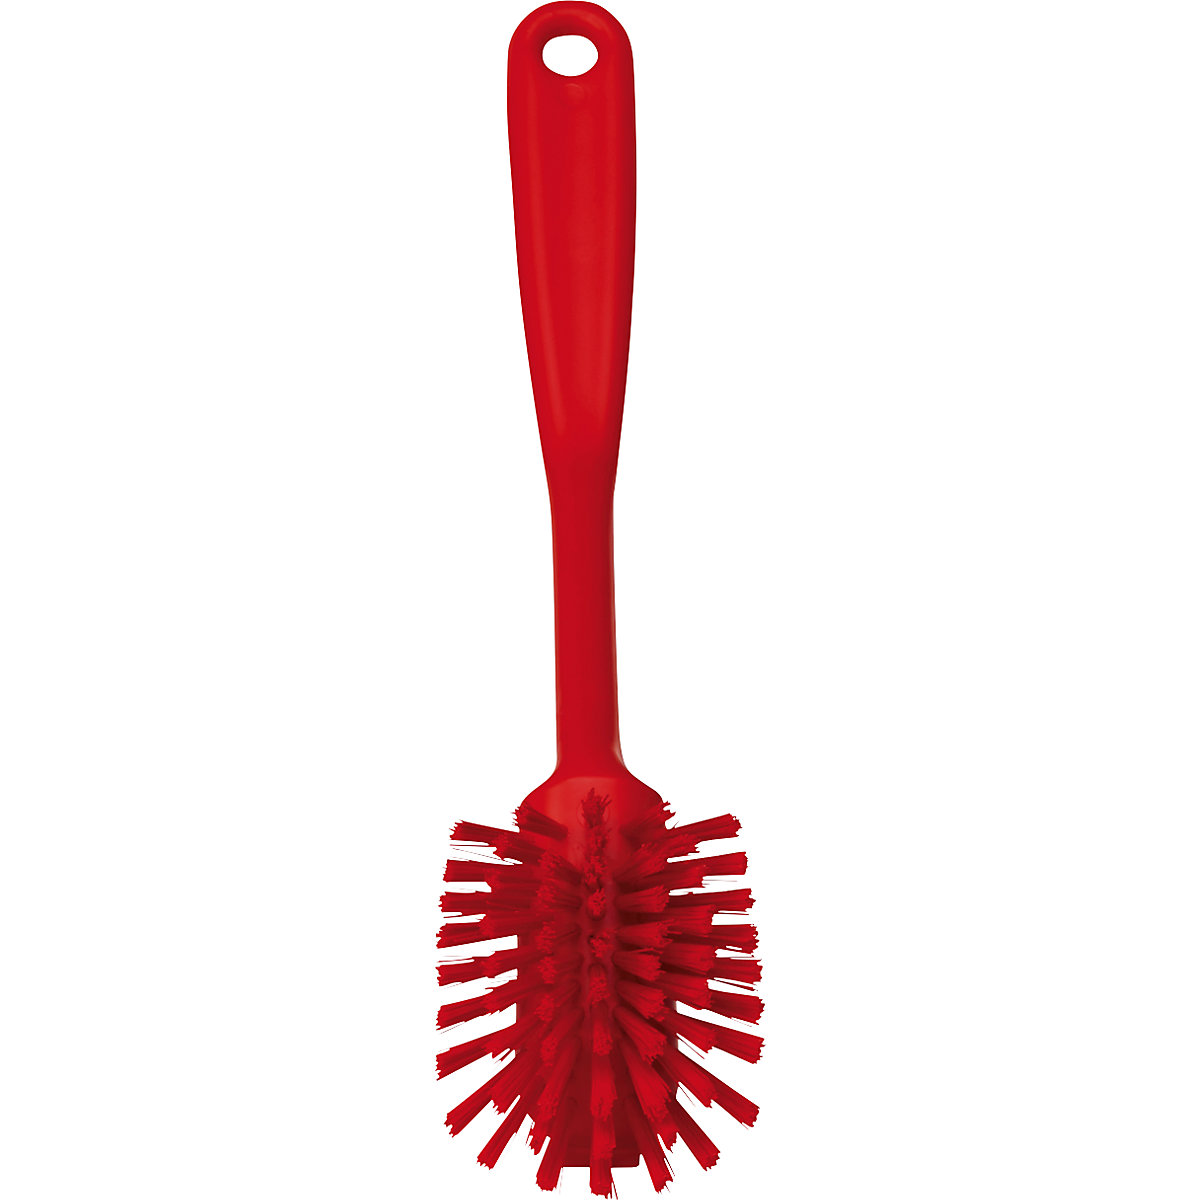 Vikan – Scrubbing brush with scraper edge (Product illustration 10)